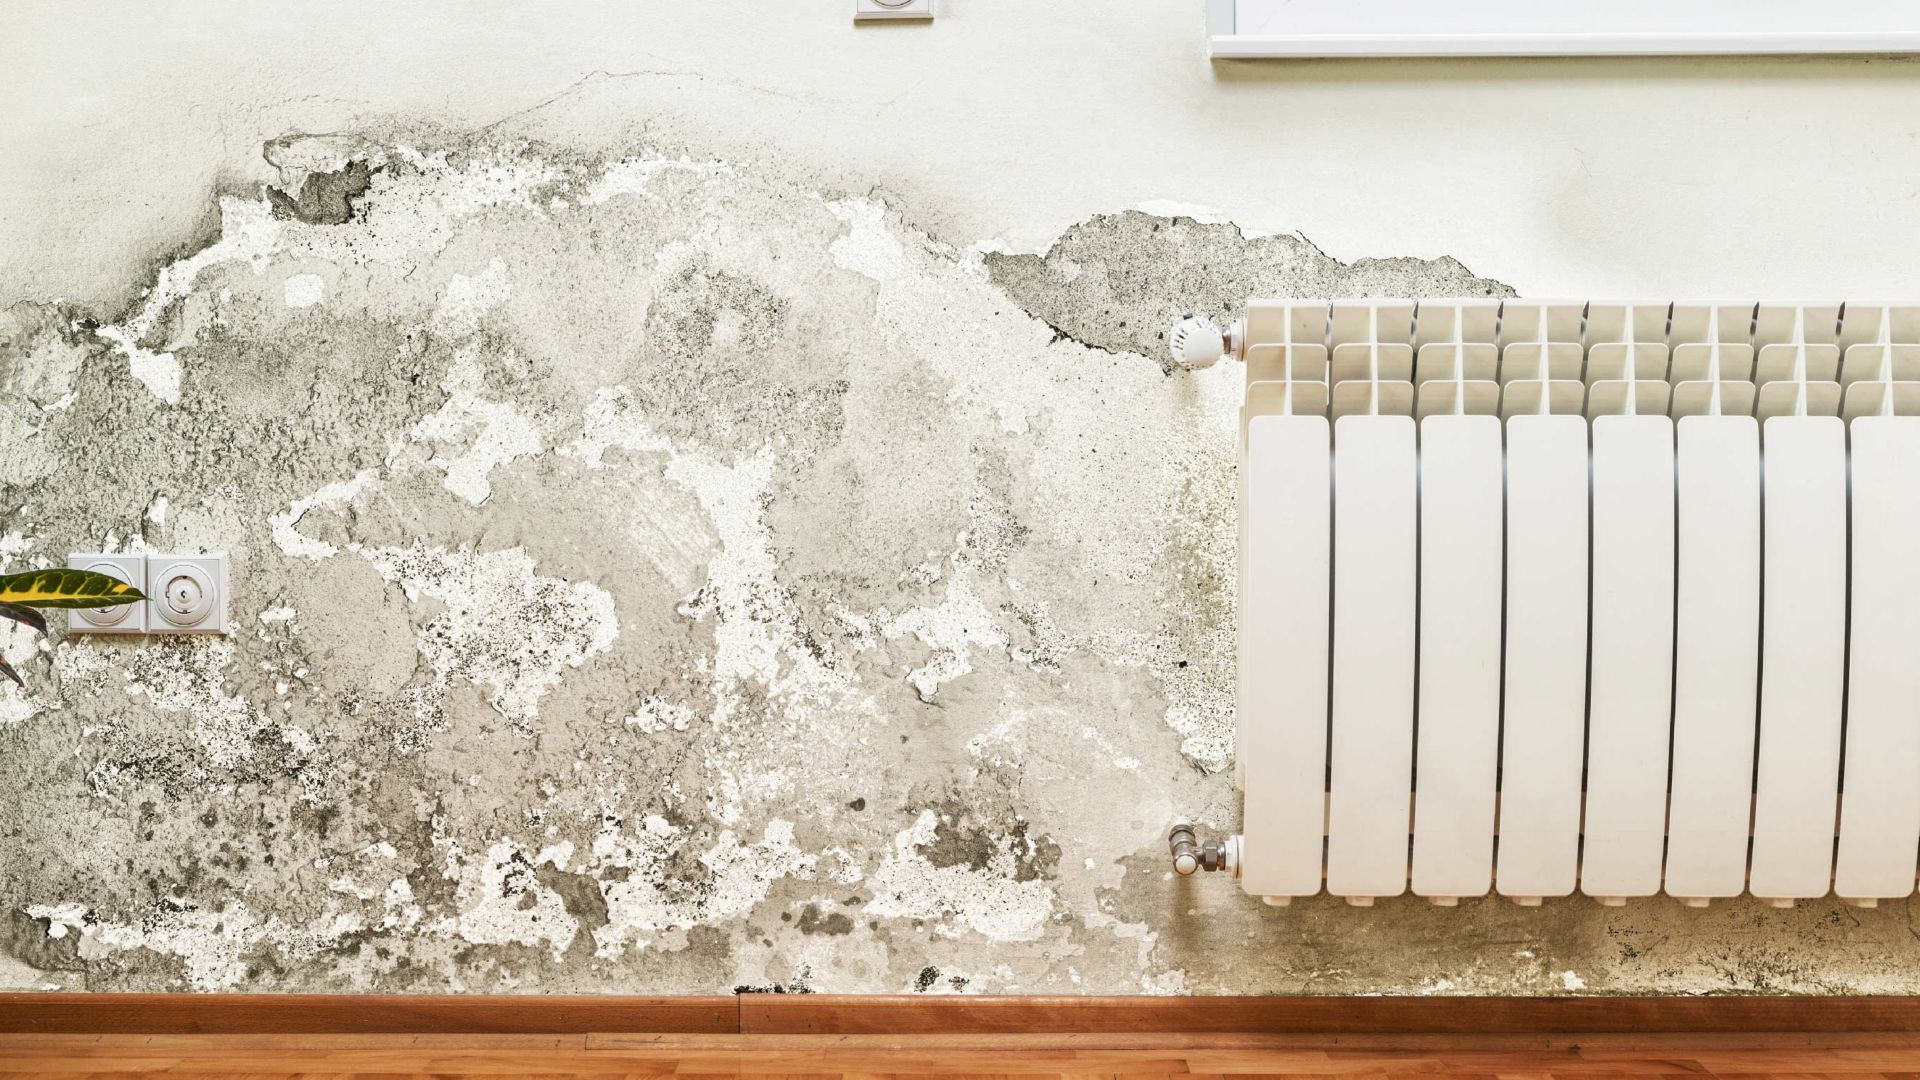 Comment traiter l'humidité des murs dans votre habitat ? - Test produit  Sika 